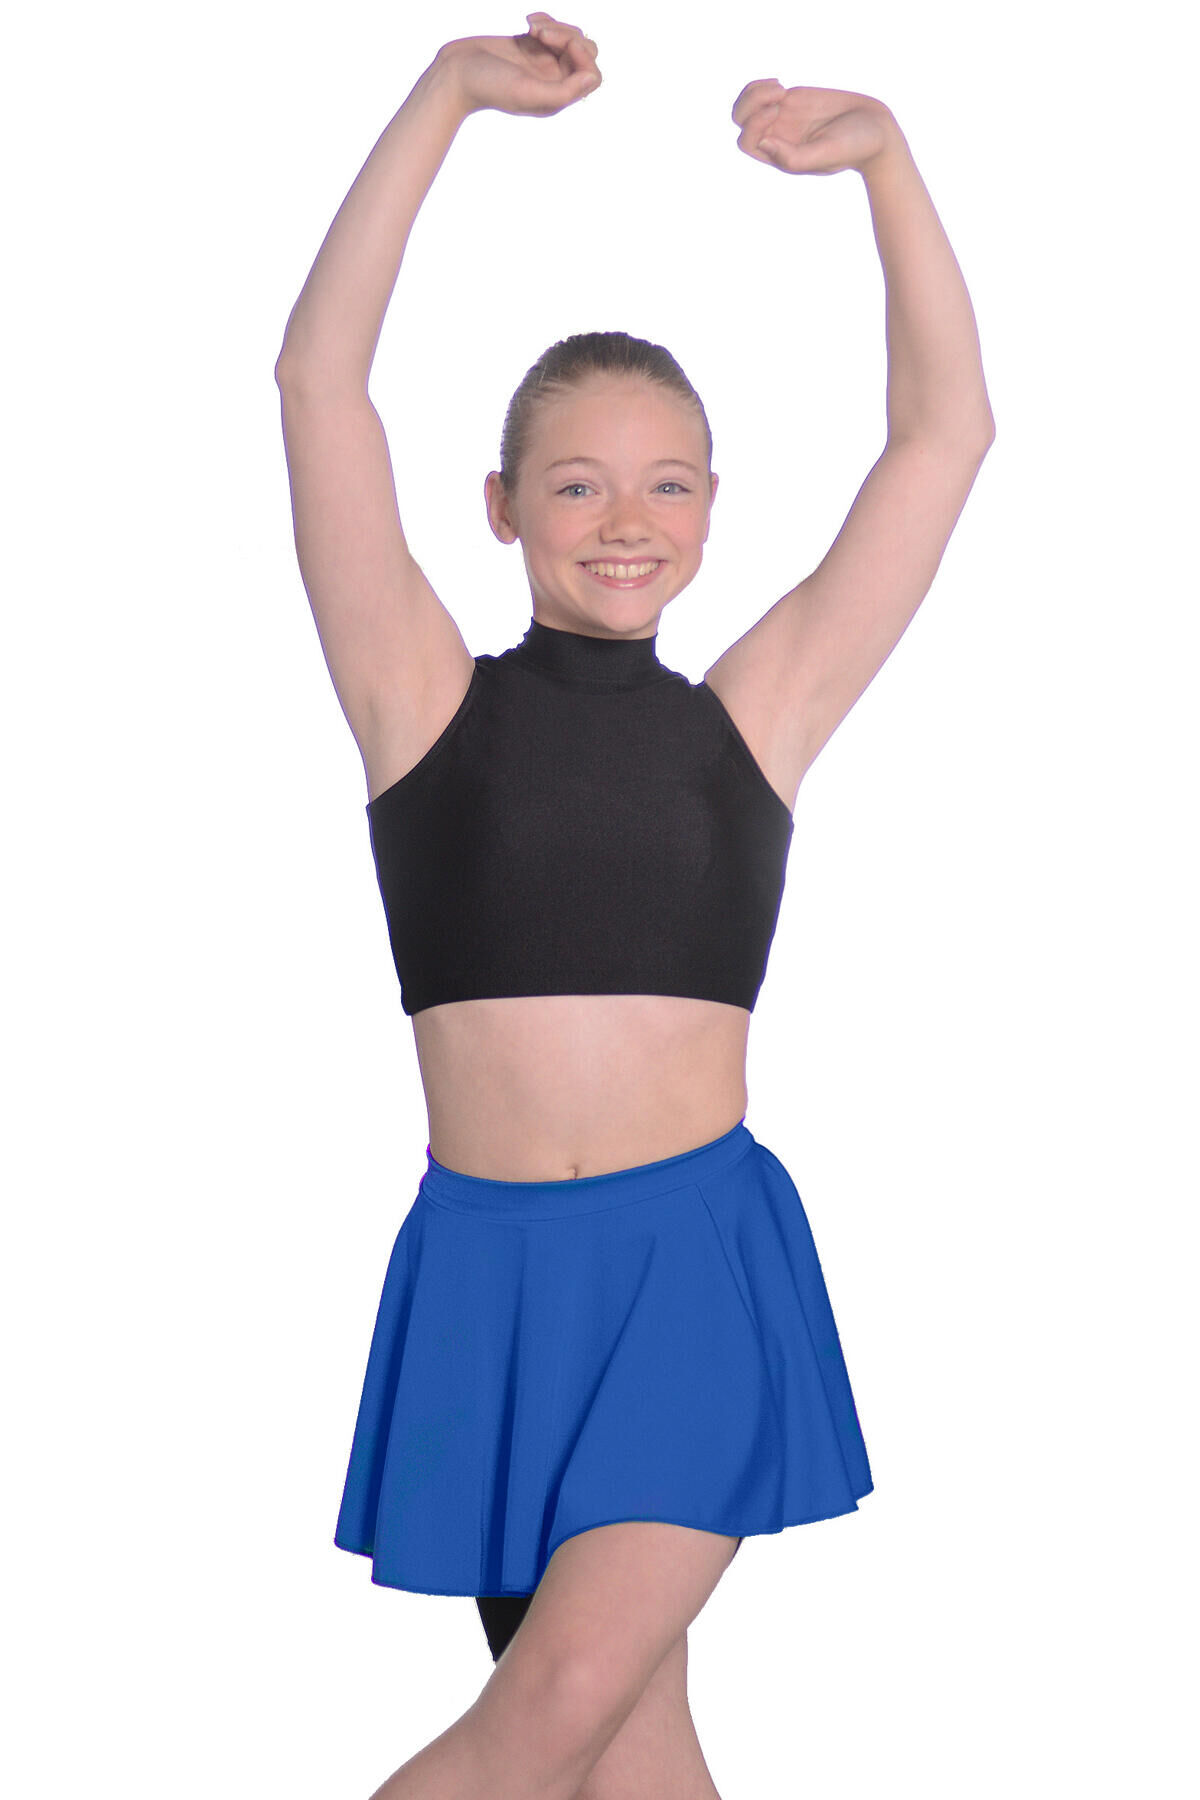 ROCH VALLEY Roch Valley Short Nylon/Lycra Circular Skirt Royal Blue